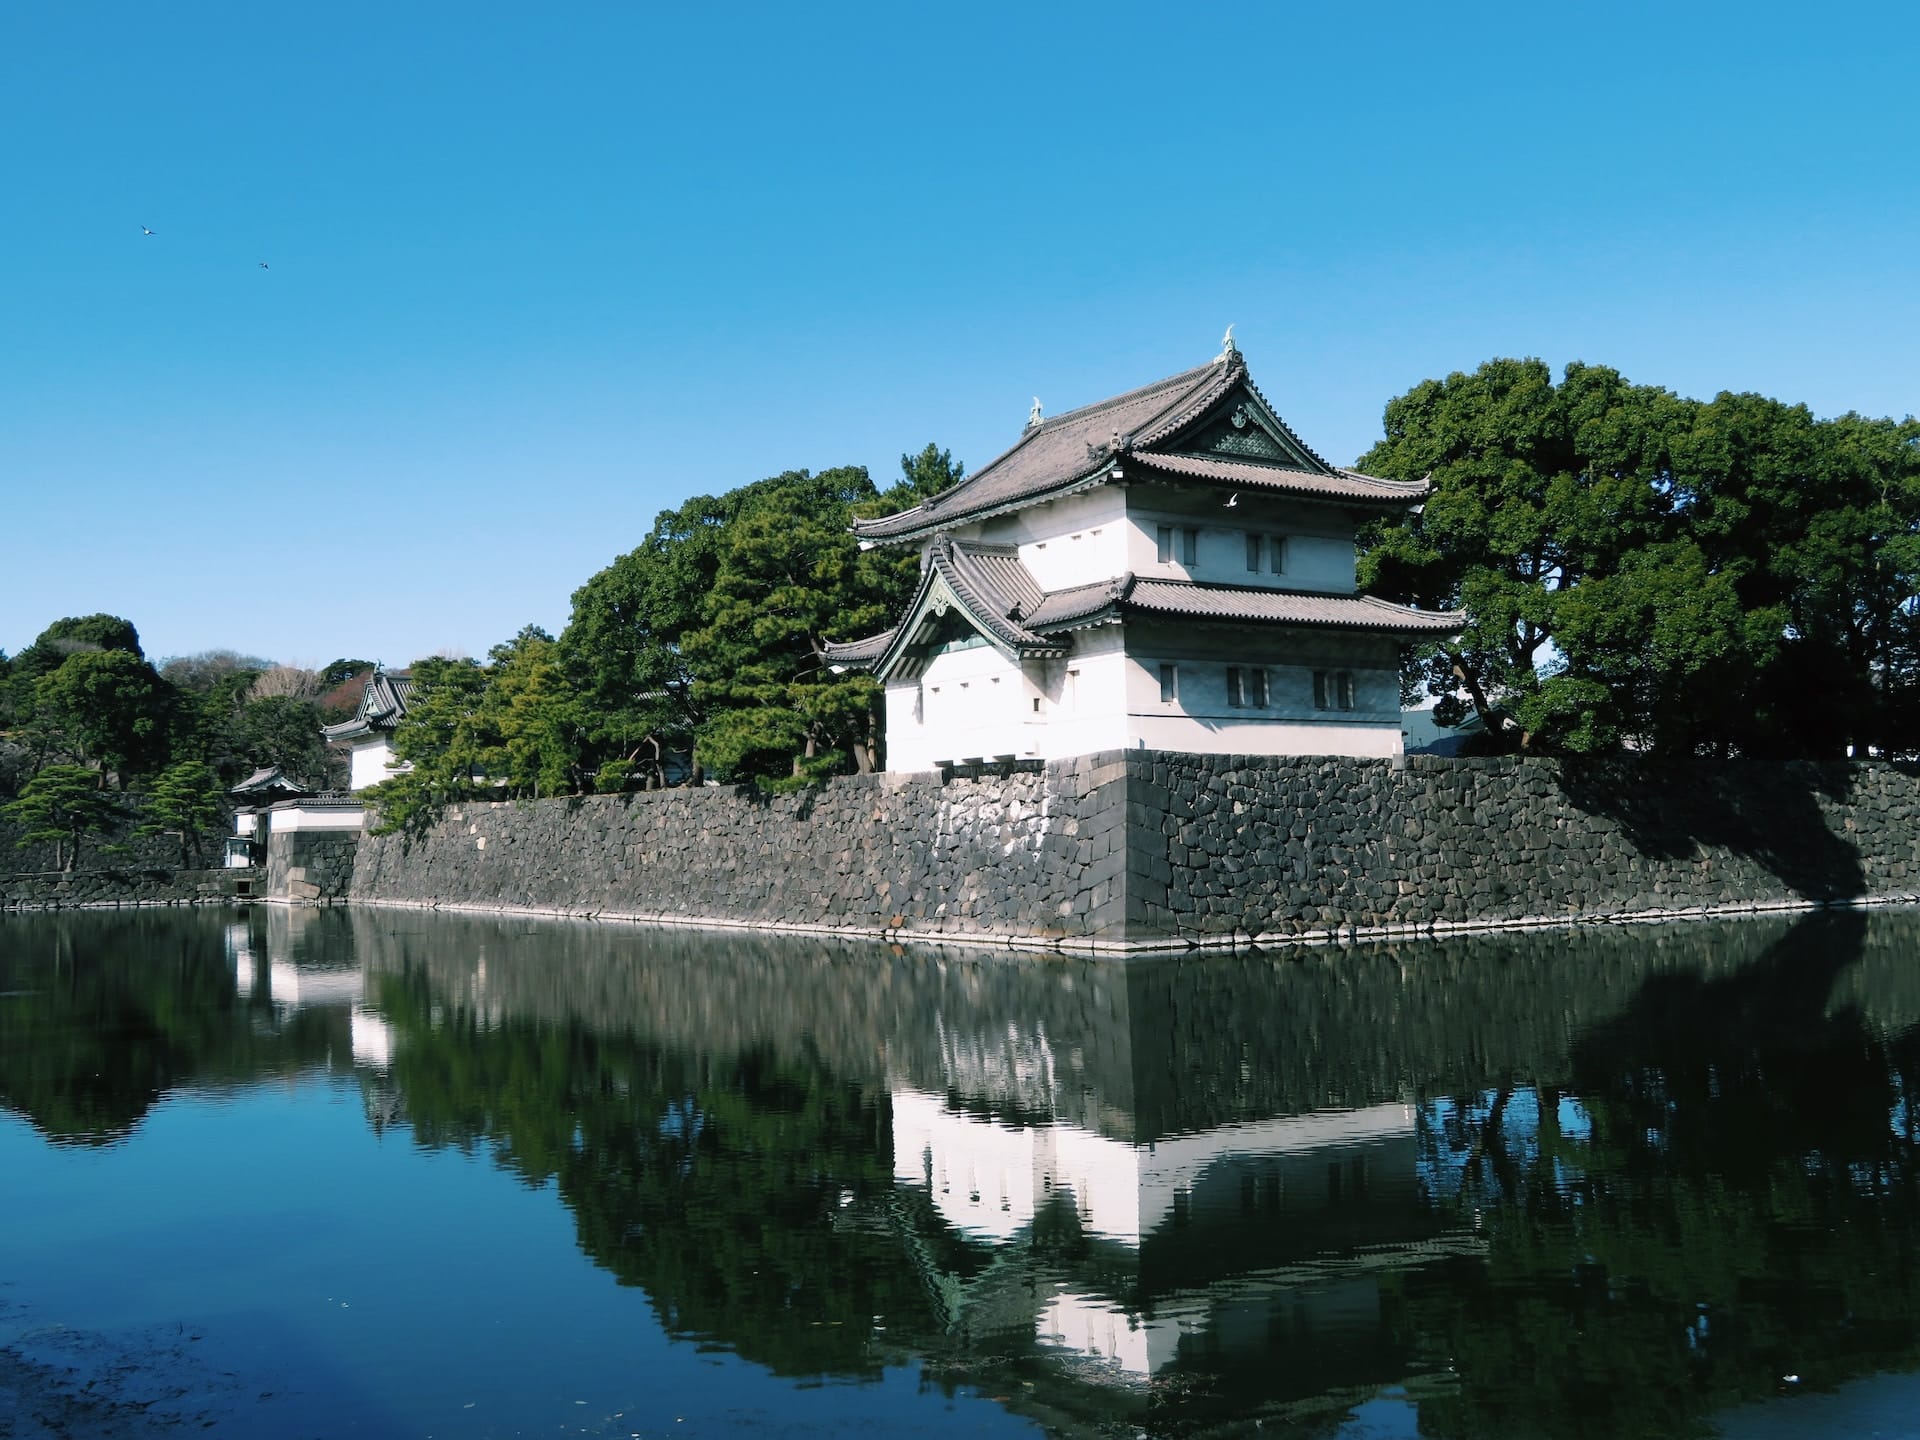 Situata nel centro di Tokyo, la città di Chiyoda è una destinazione essenziale per i visitatori interessati alla storia, alla cultura e alla politica giapponese.